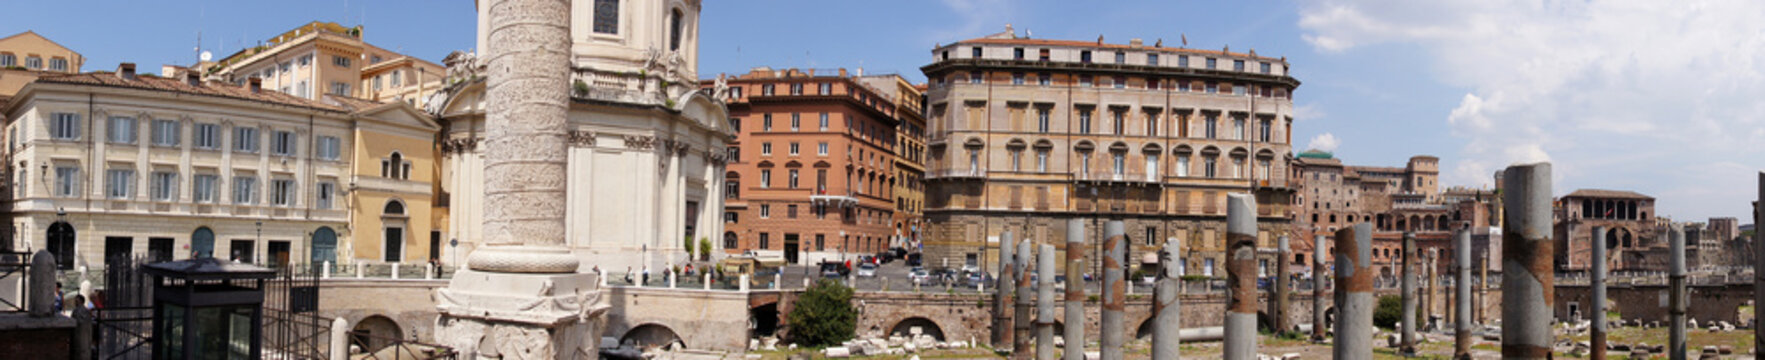 Forum de Trajan à Rome